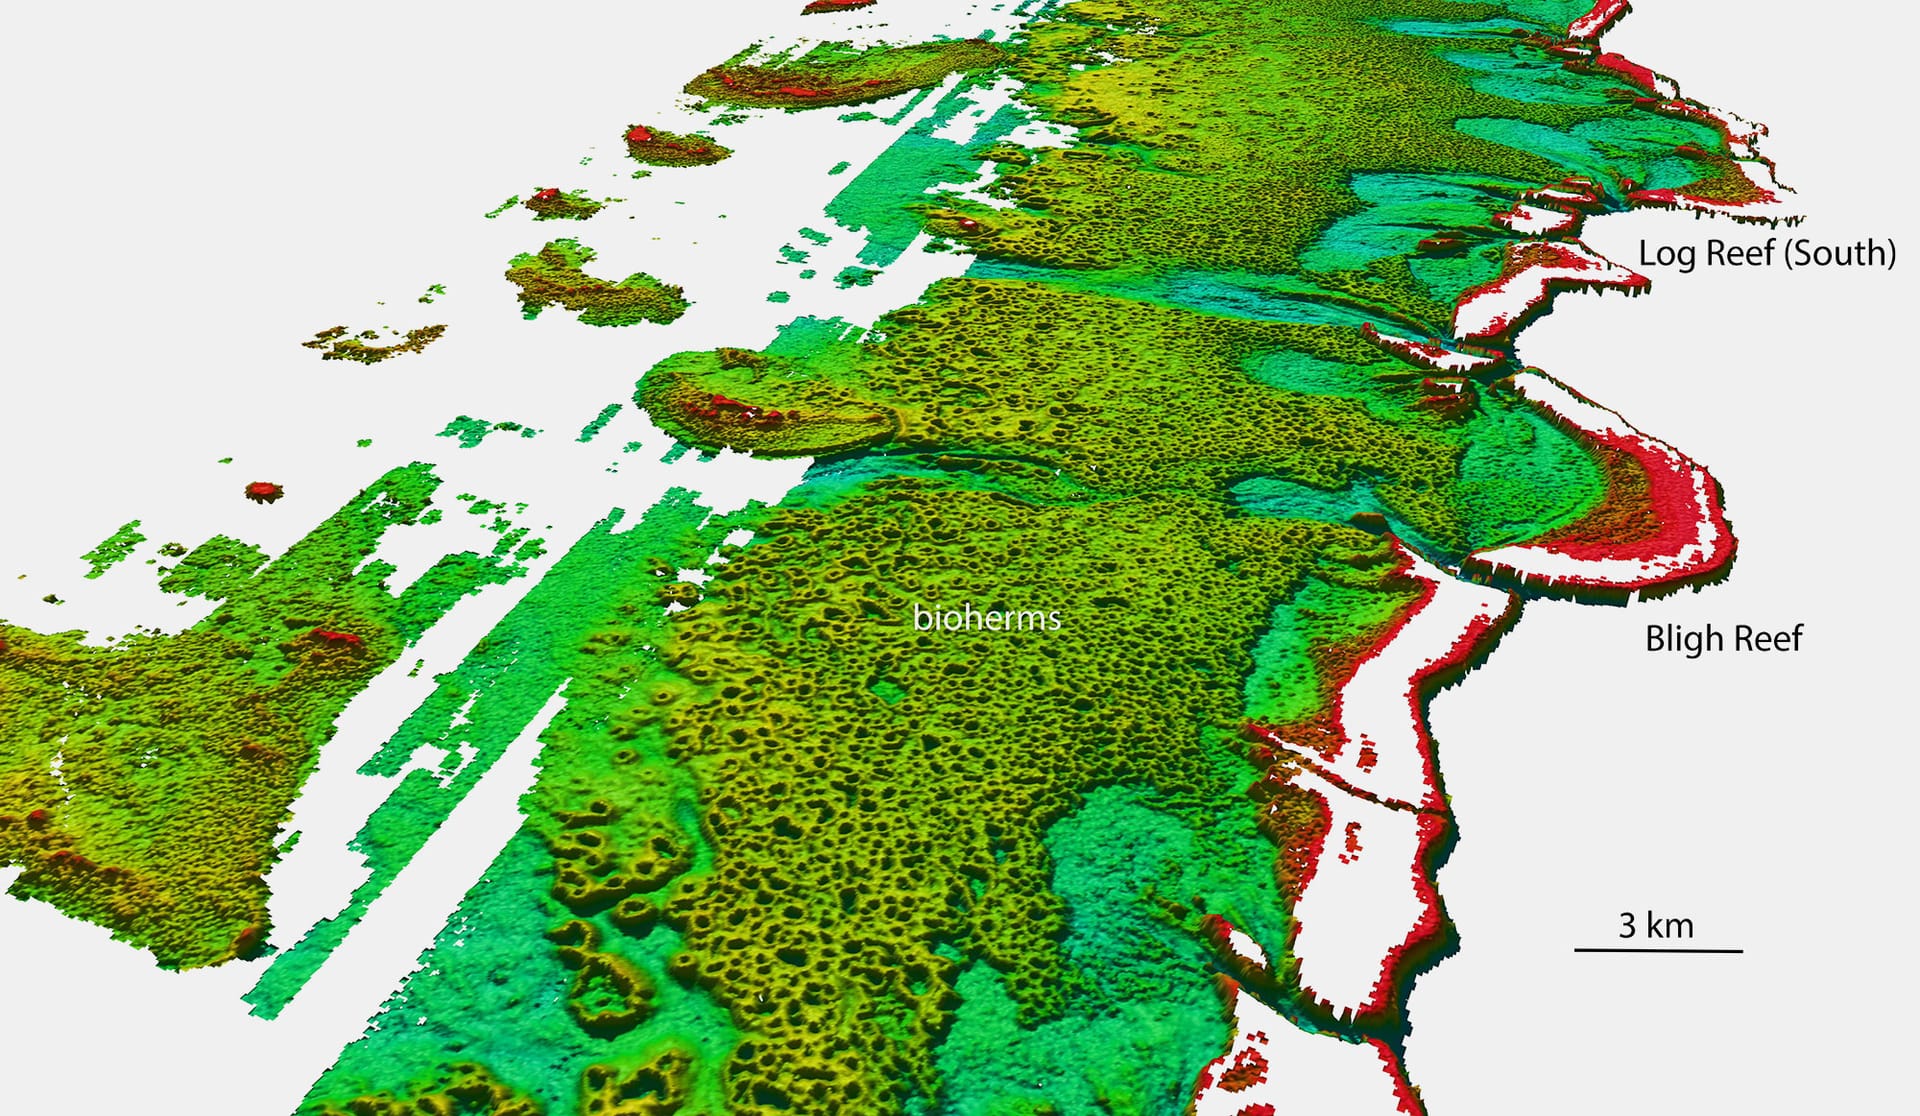 Die Grafik zeigt eine Nord-West-Ansicht des Gebietes um das Bligh Reef vor Cape York am Great Barrier Reef. Die Farben zeigen über einen Bereich von 50 Metern die Tiefen an zwischen rot (flach) und blau (tief). Der Begriff "Bioherm" meint ein durch Organismen entstandenes Riff mit Höhenwachstum.